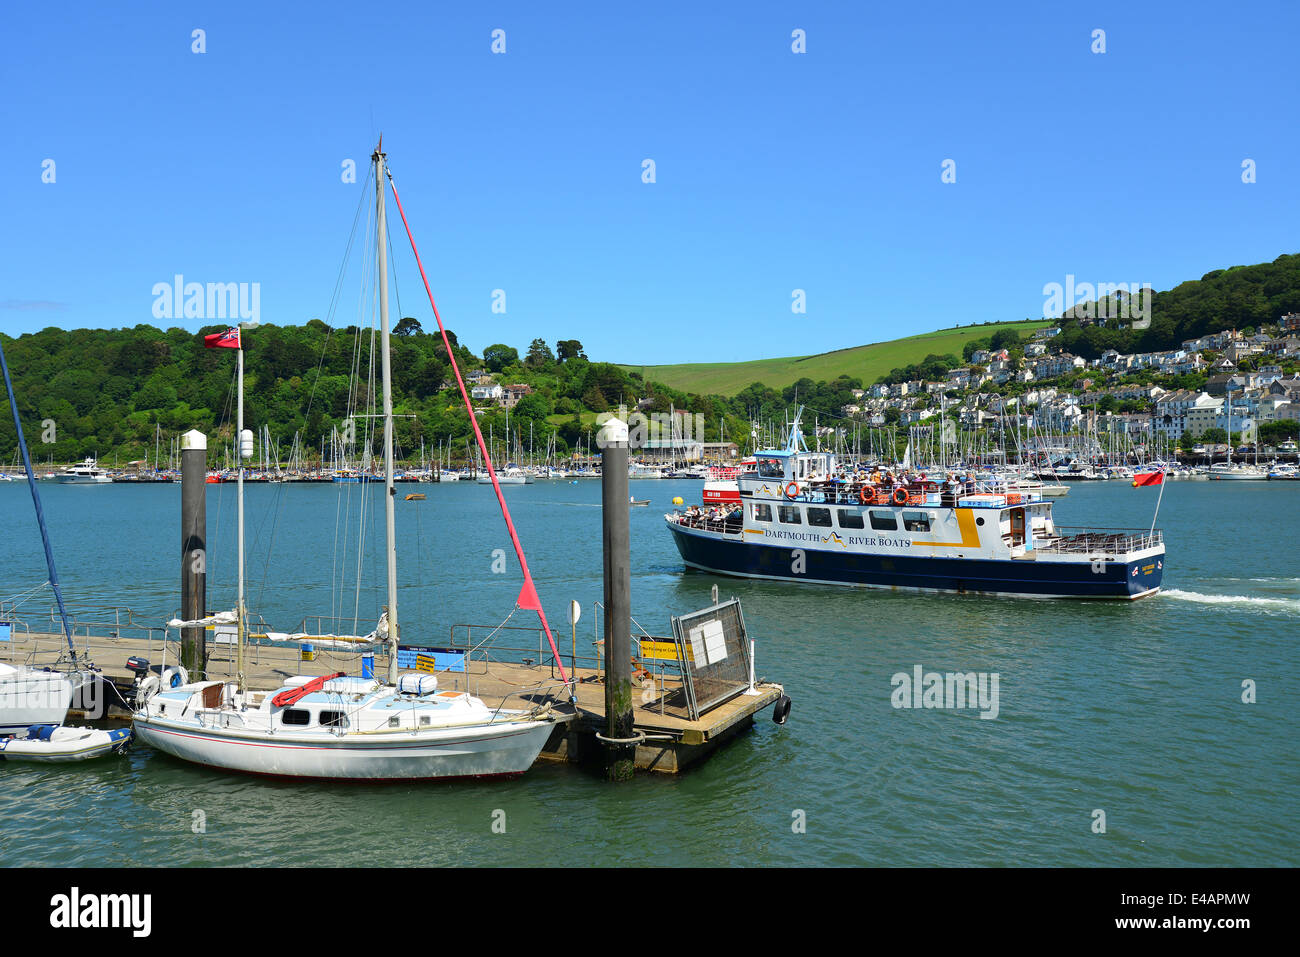 Bateau de croisière, le port de Dartmouth, Dartmouth, District de South Hams, Devon, Angleterre, Royaume-Uni Banque D'Images